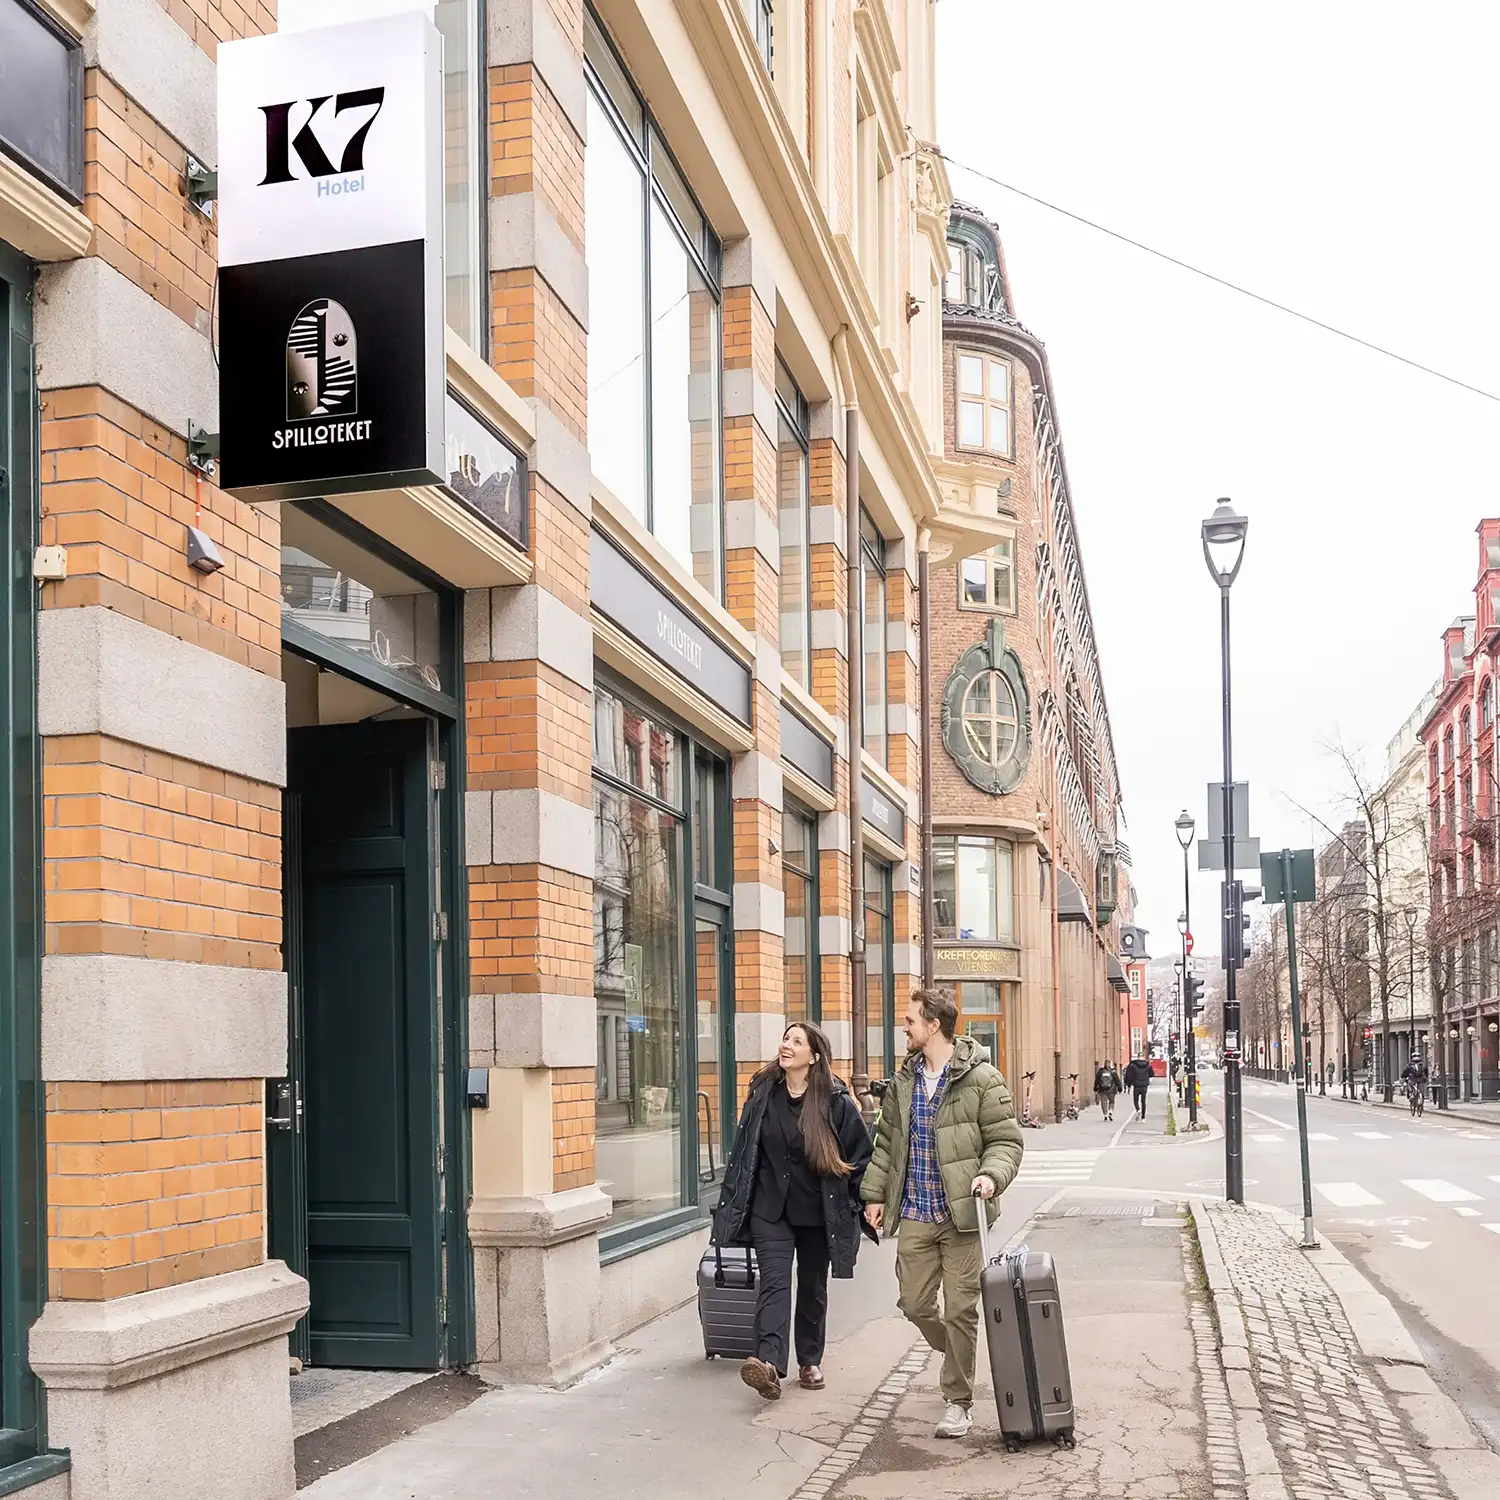 Par med kofferter på vei mot inngangen til K7 Hotel Oslo.